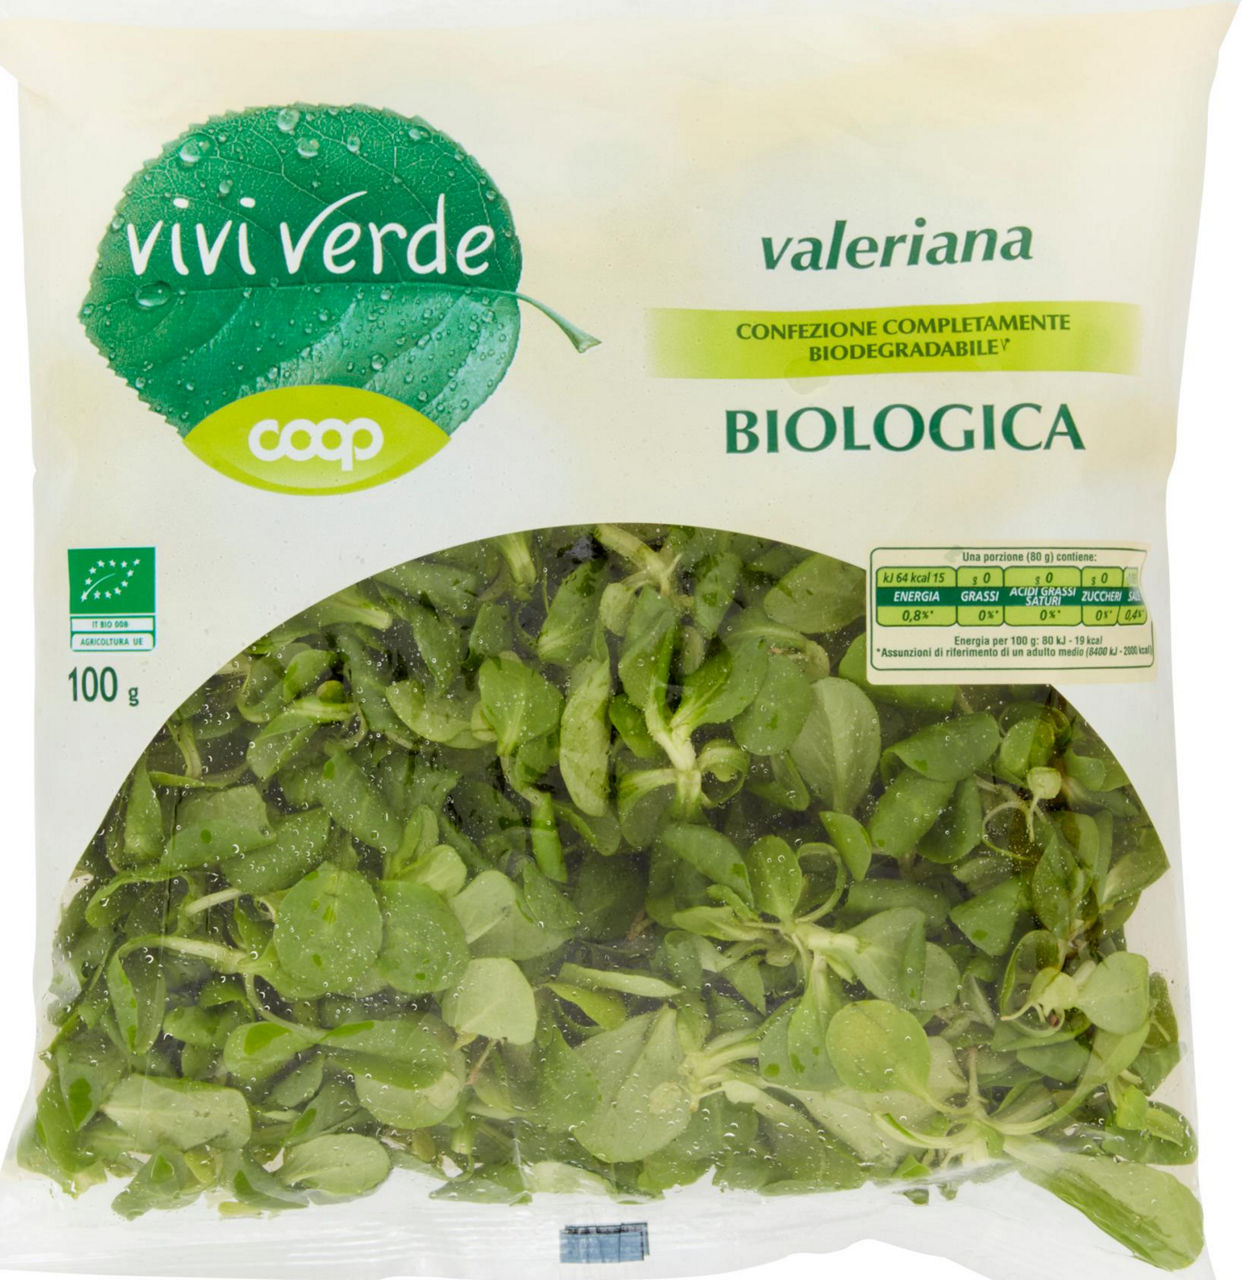 valeriana Biologica 100 g vivi verde - 1